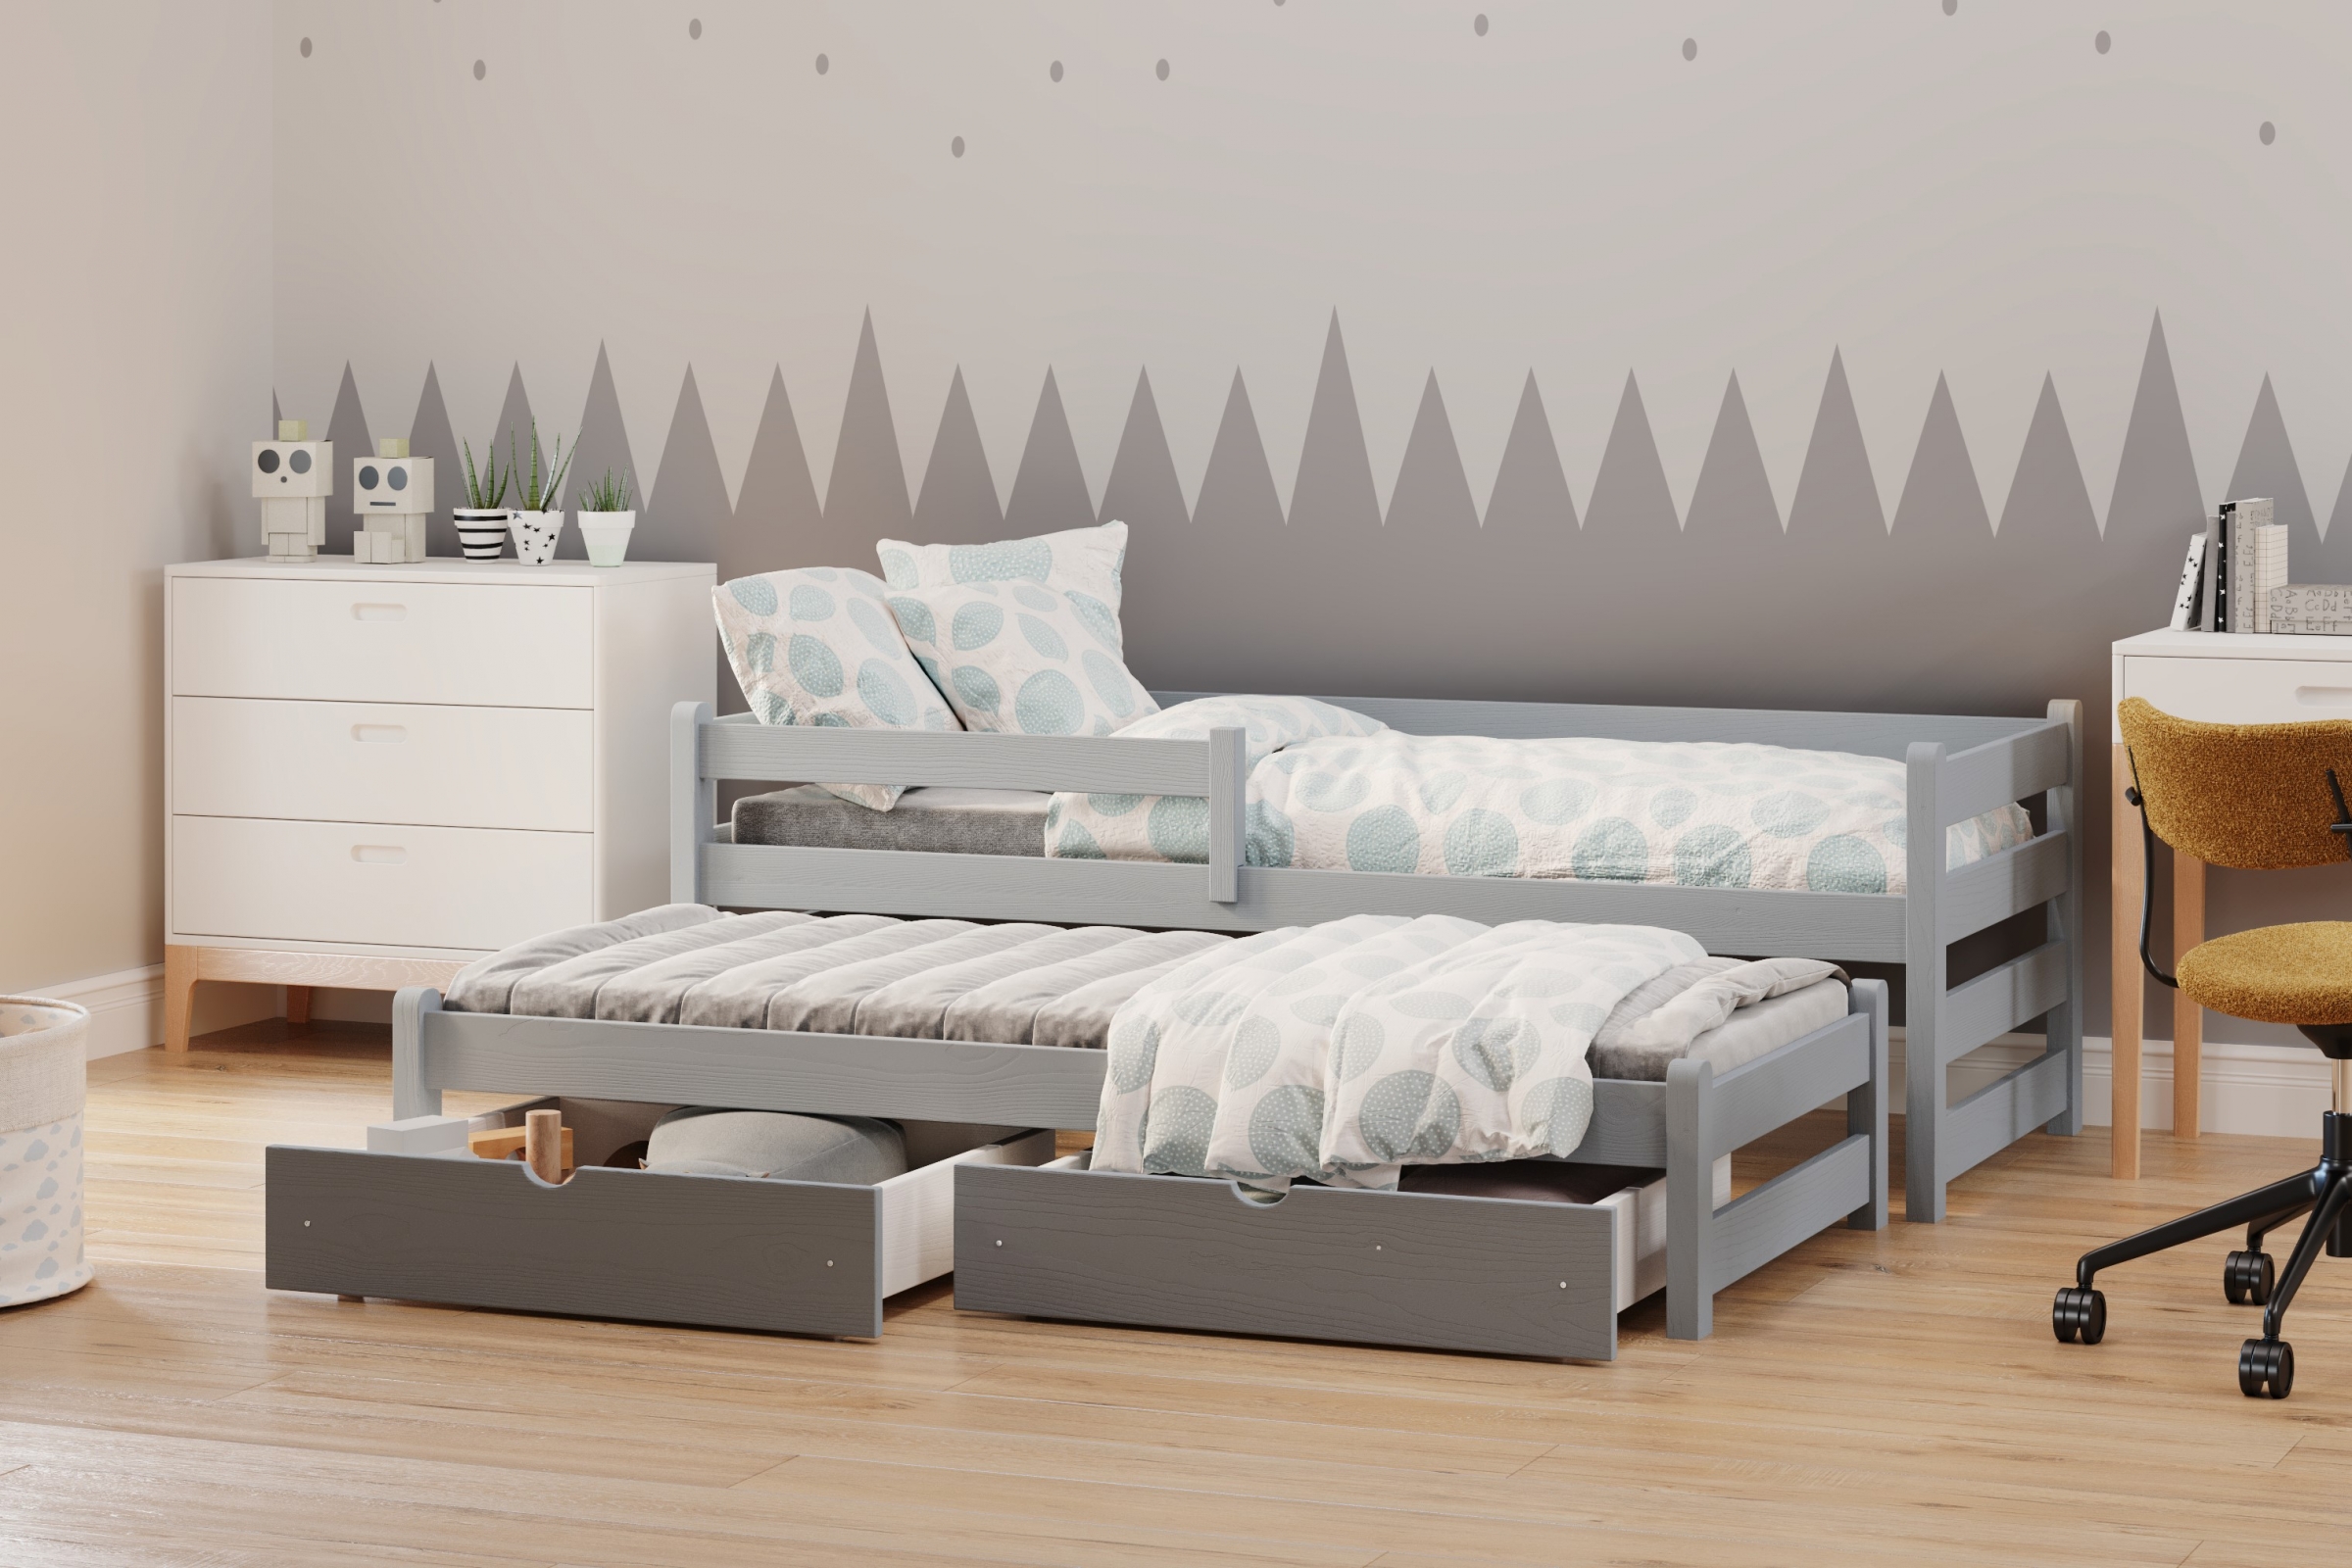 postel dětské přízemní výsuvná Alis DPV 001 - šedý, 80x190 postel přízemní výsuvná Alis - Barva šedý - aranzacja